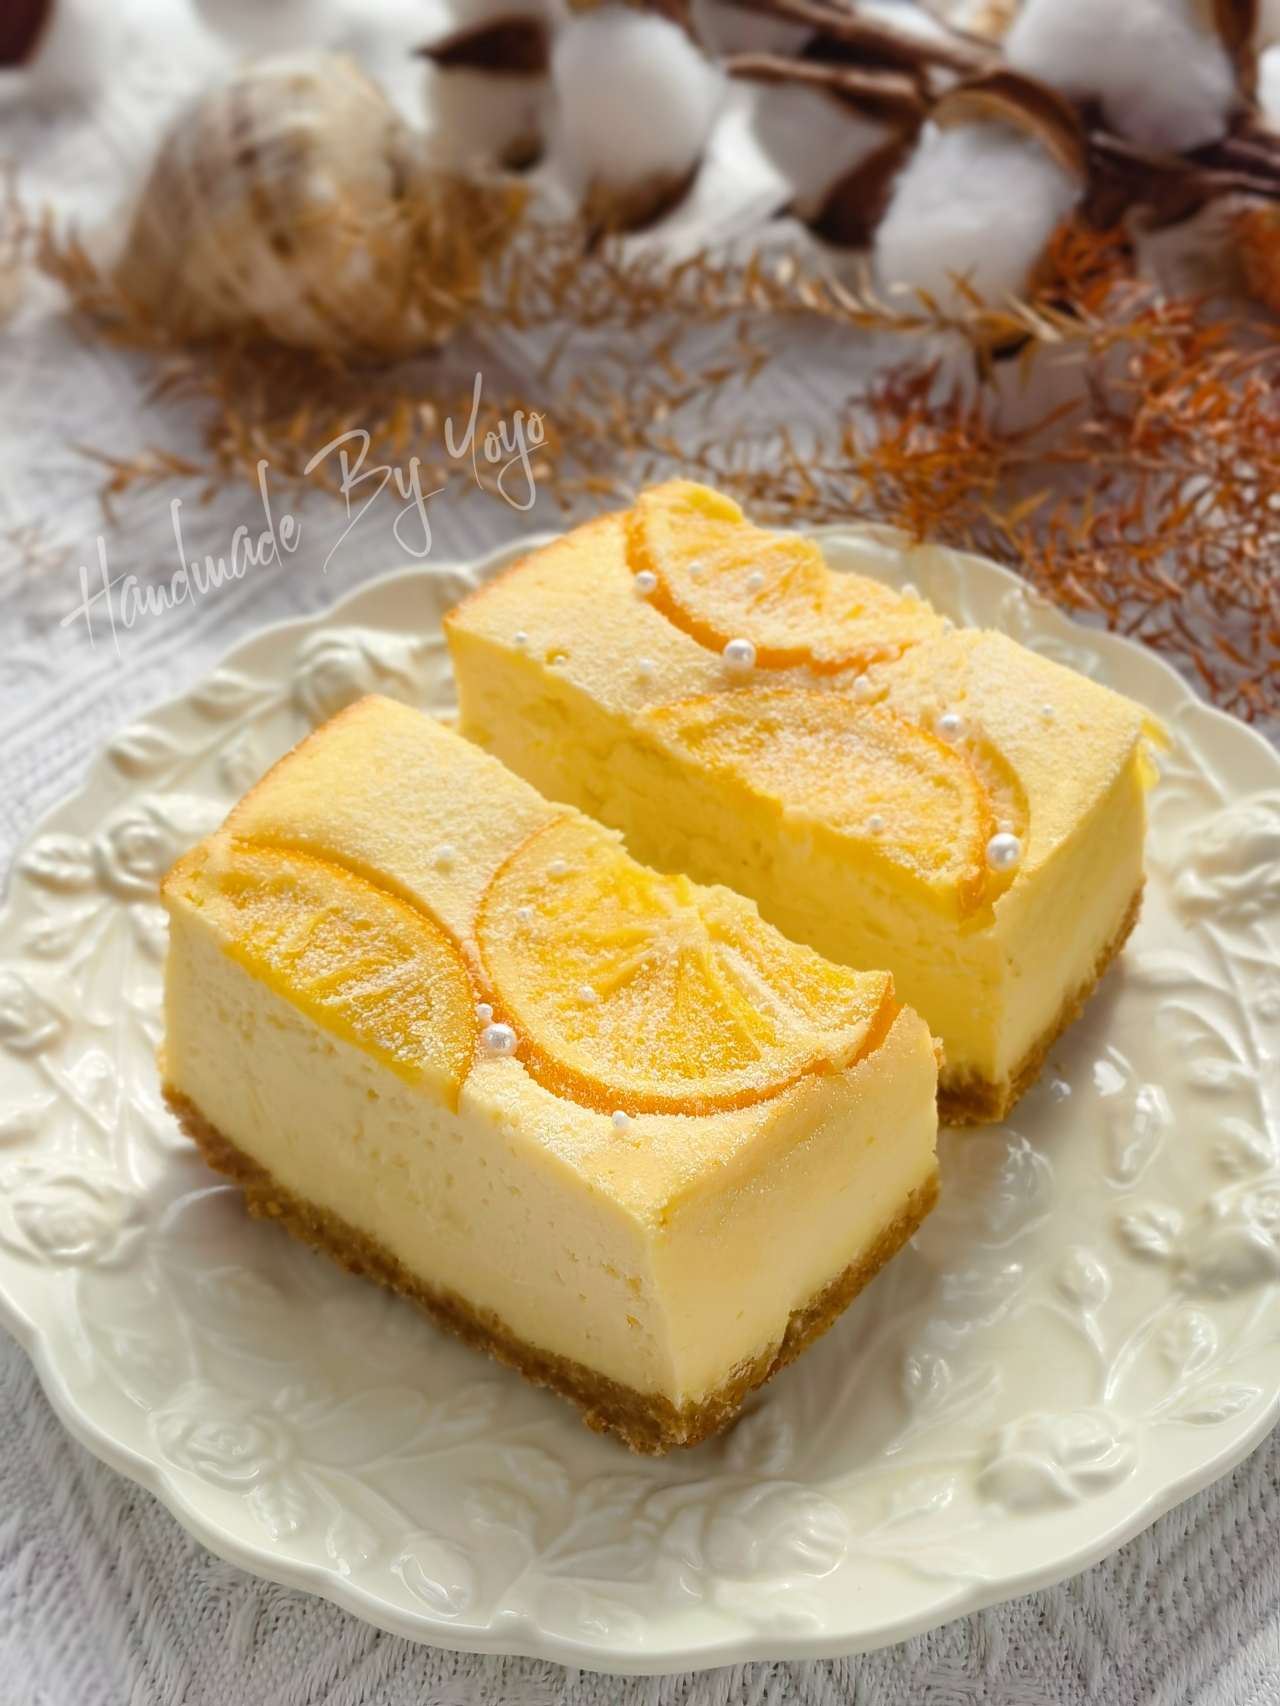 香橙酸奶芝士蛋糕❤️消耗奶油奶酪